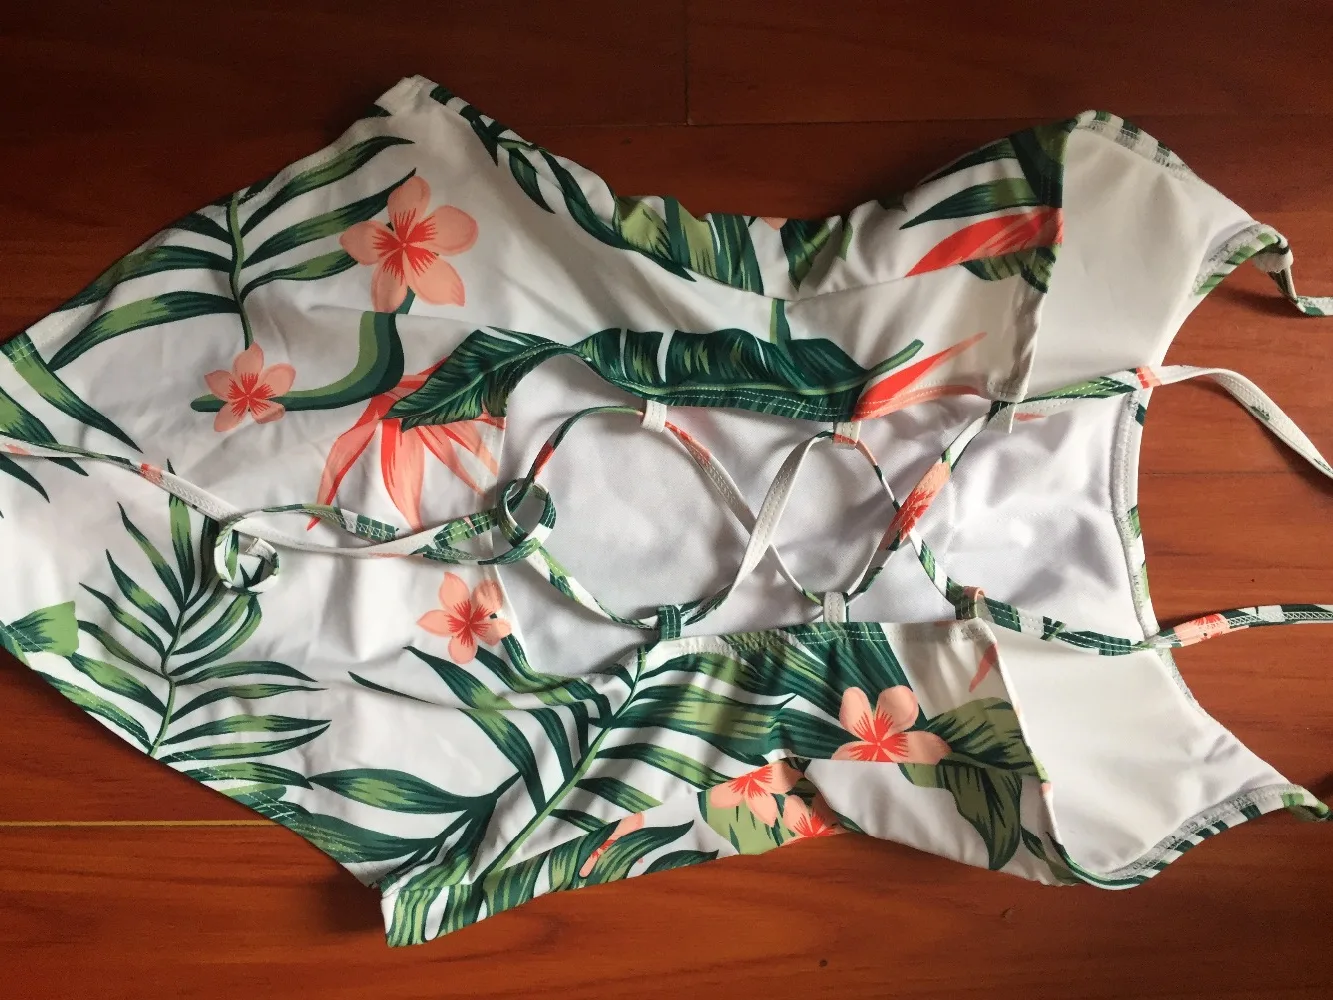 Семейный комплект купальных костюмов с принтом тропических листьев; купальный костюм для мамы и дочки; купальные шорты для папы и сына; Одинаковая одежда для мамы и меня